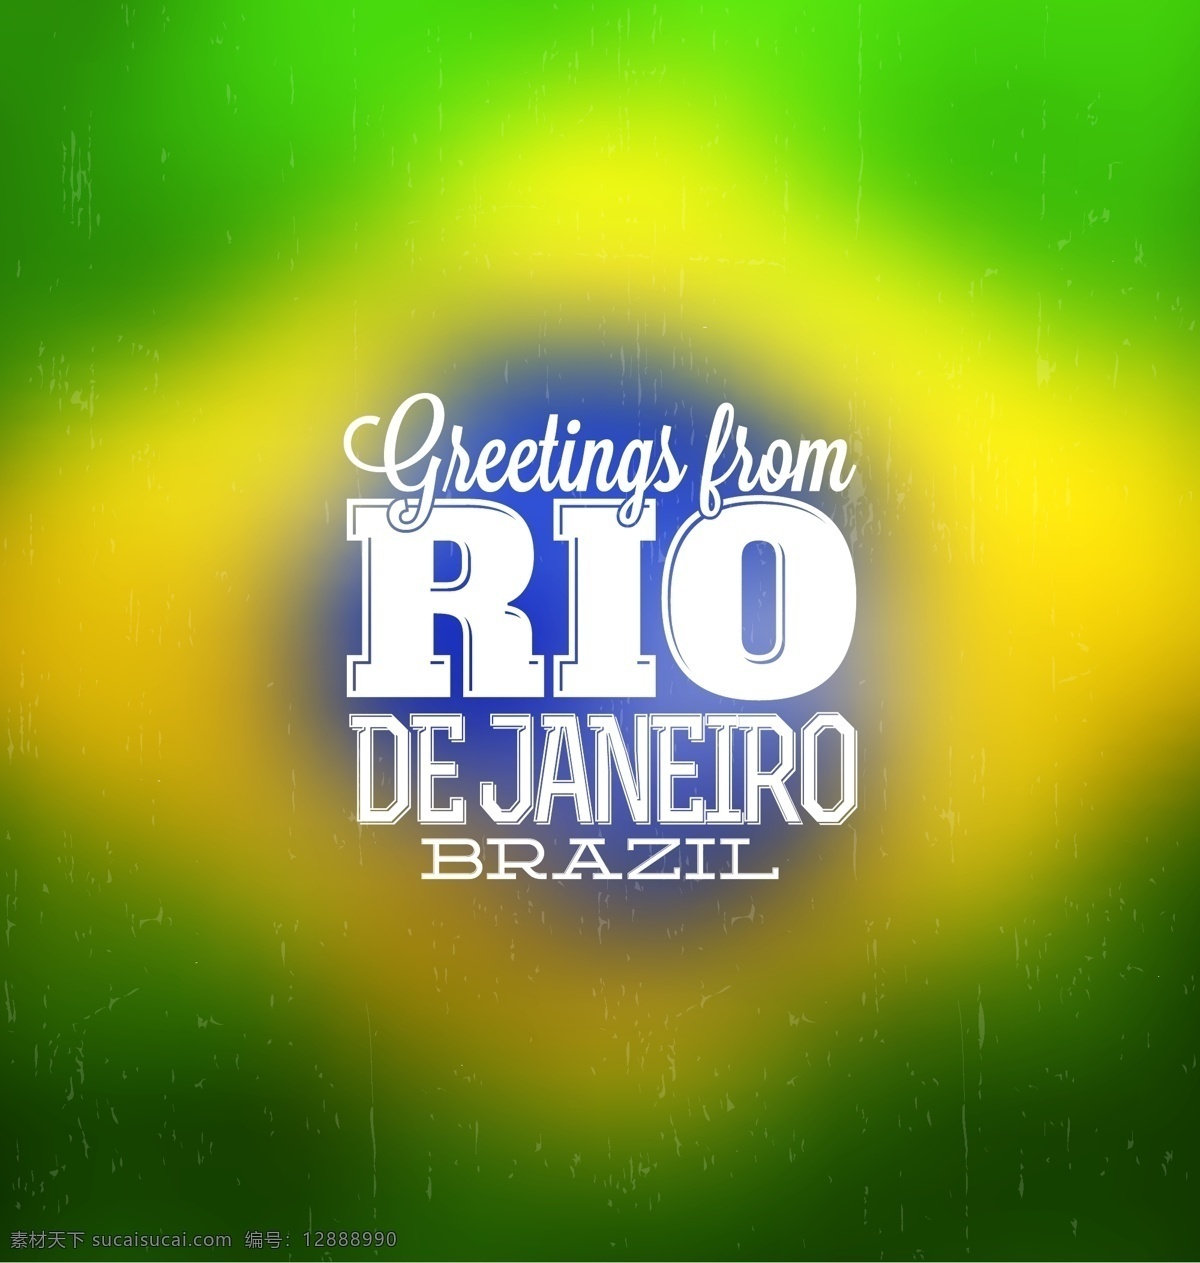 巴西国旗 巴西 矢量 模板下载 巴西设计 巴西元素 巴西文化 rio 里约热内卢 psd源文件